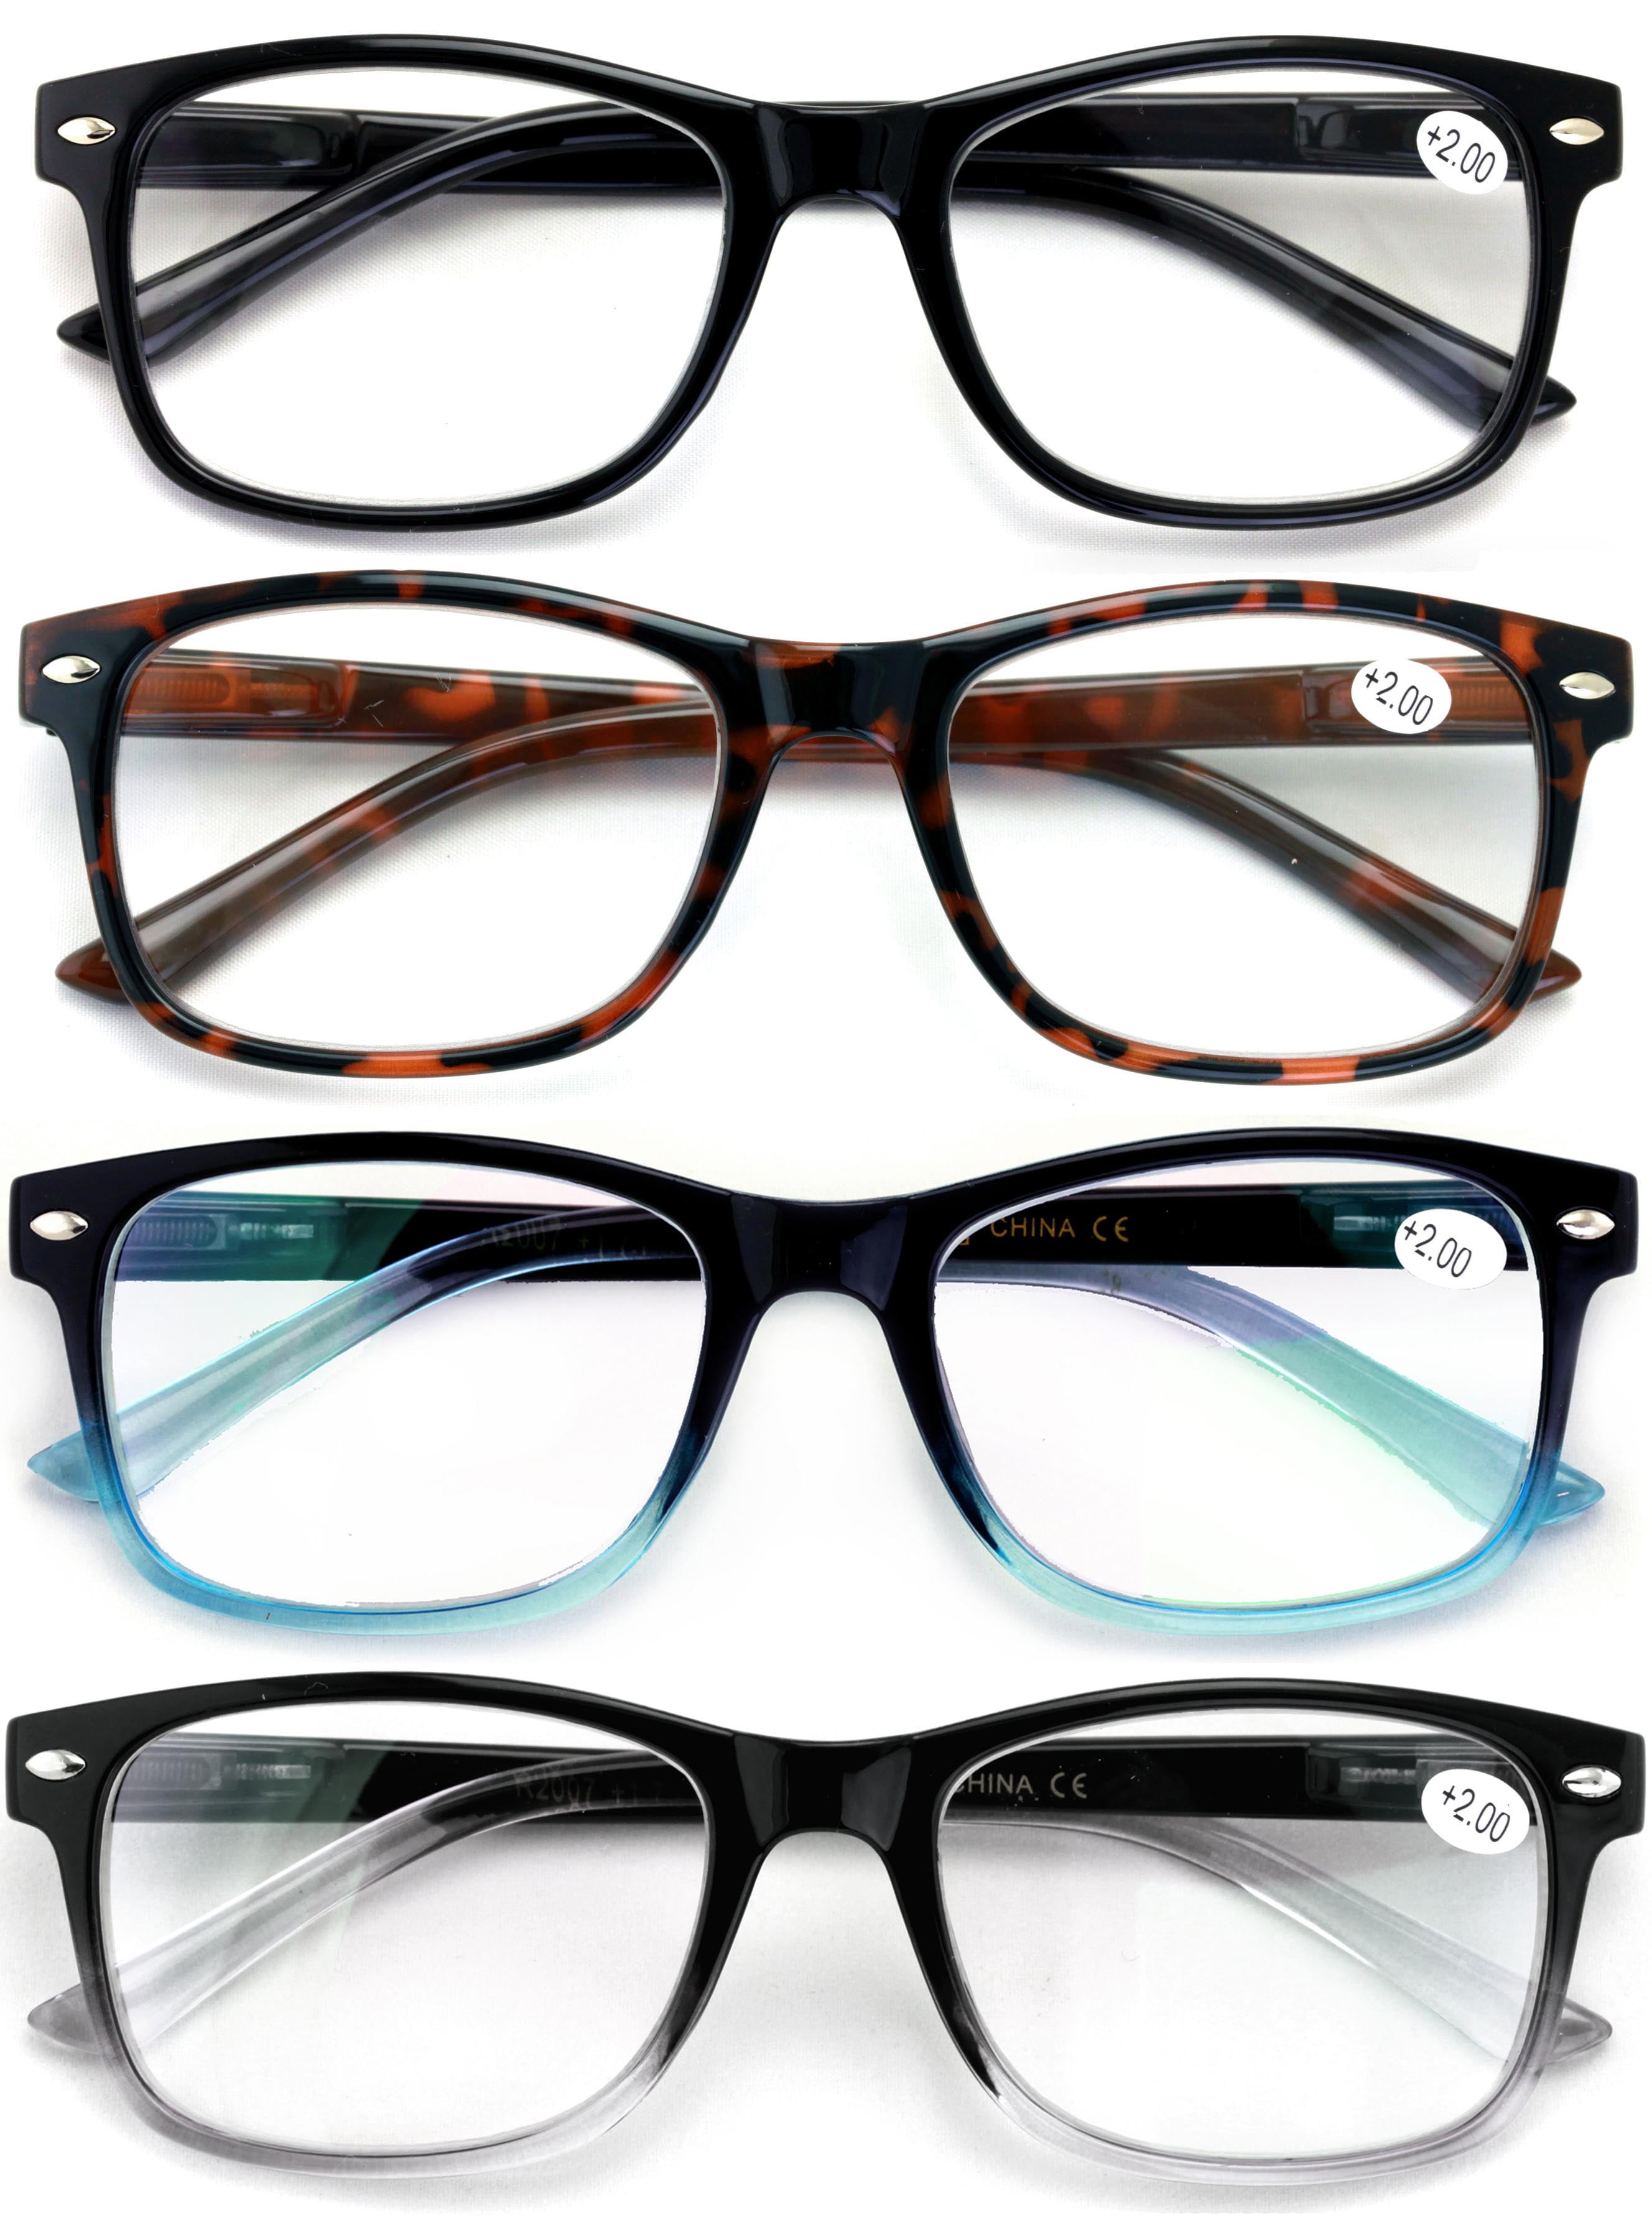 5-Pack Reading Glasses Blue Light Blocking for Women Men Lightweight Oval Frame Eyeglasses Anti UV Ray Computer Readers